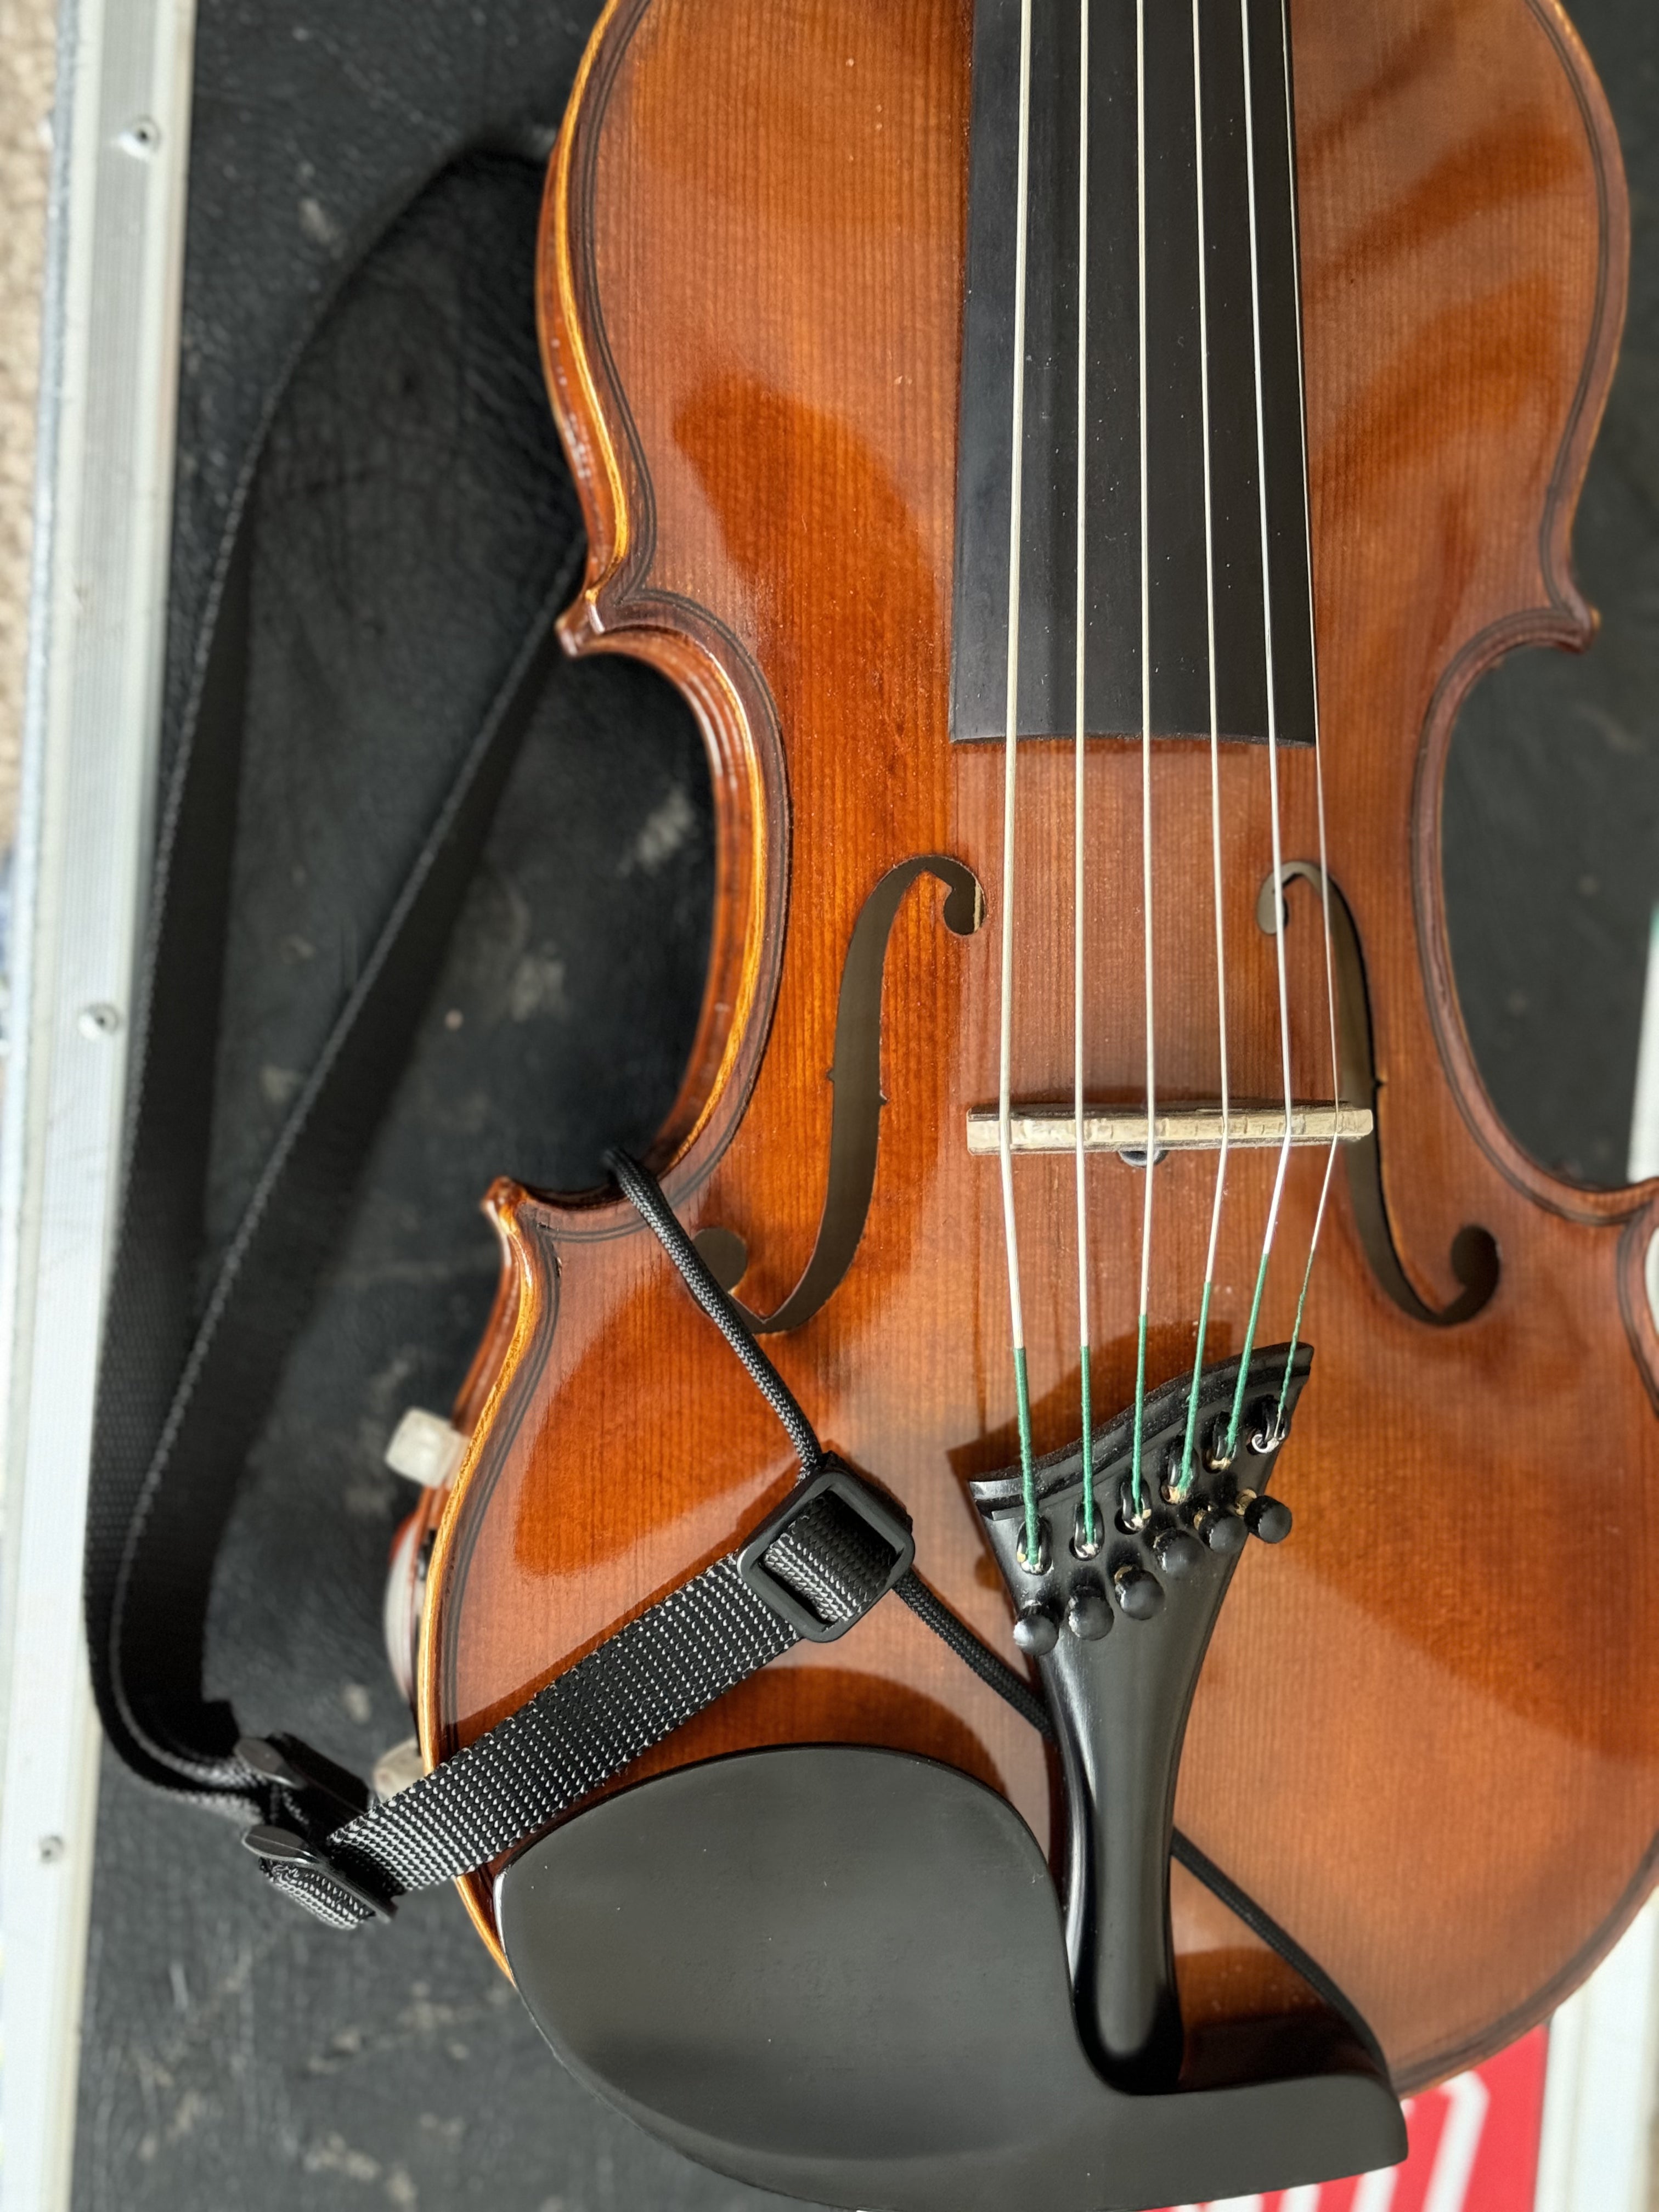 ISI/Aceto Violin Neck Strap